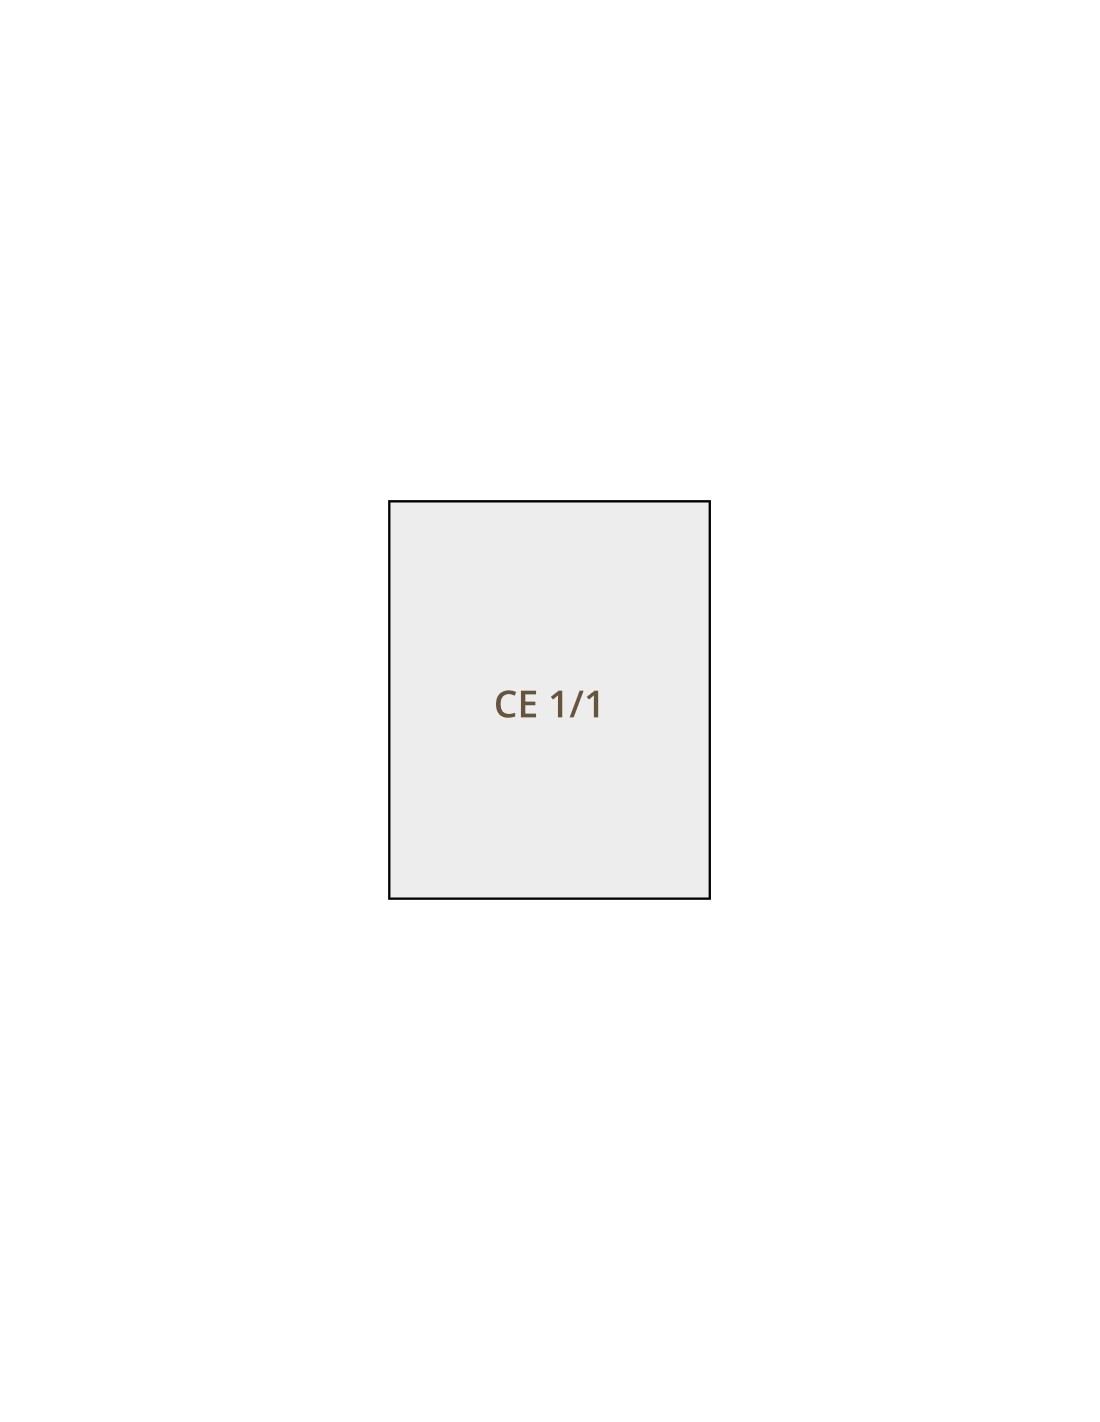 Cestello cuocipasta CE 1/1 - Per modello CPM